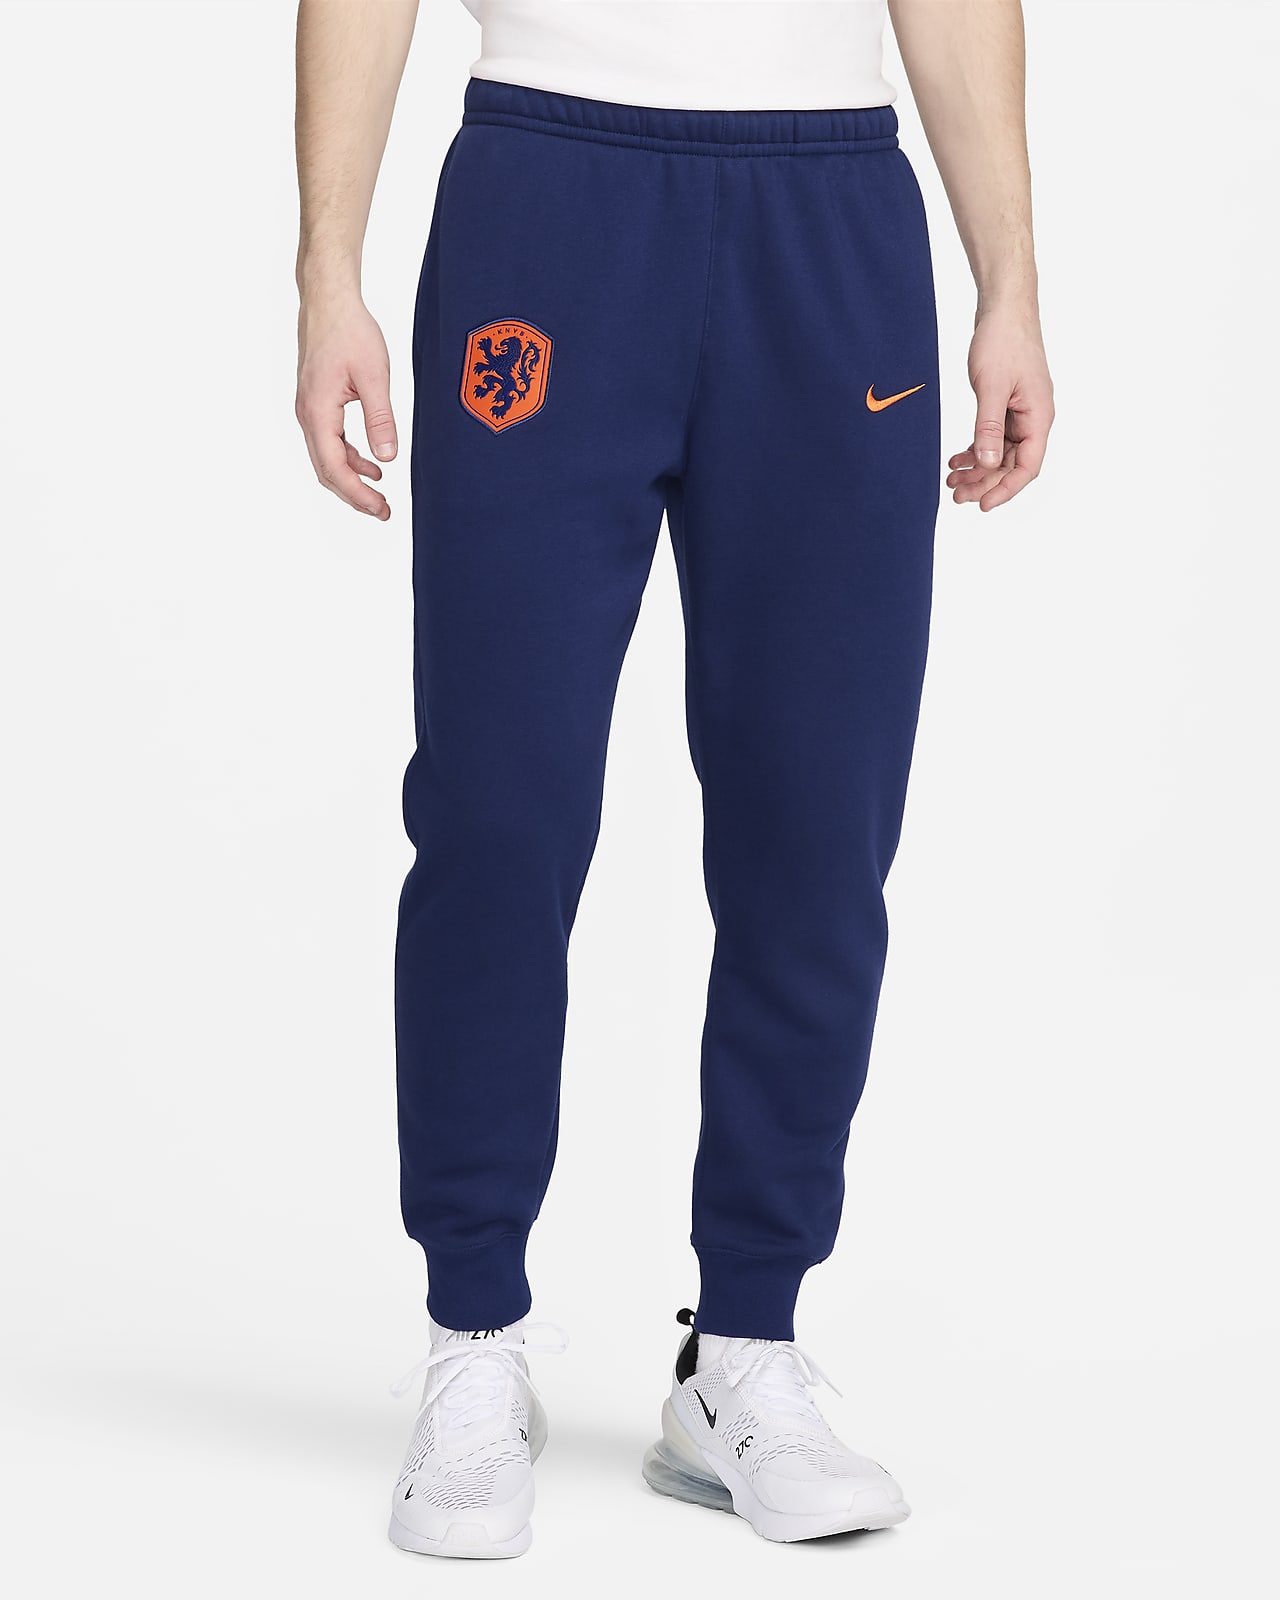 Ανδρικό ποδοσφαιρικό φλις παντελόνι φόρμας Nike Κάτω Χώρες Club